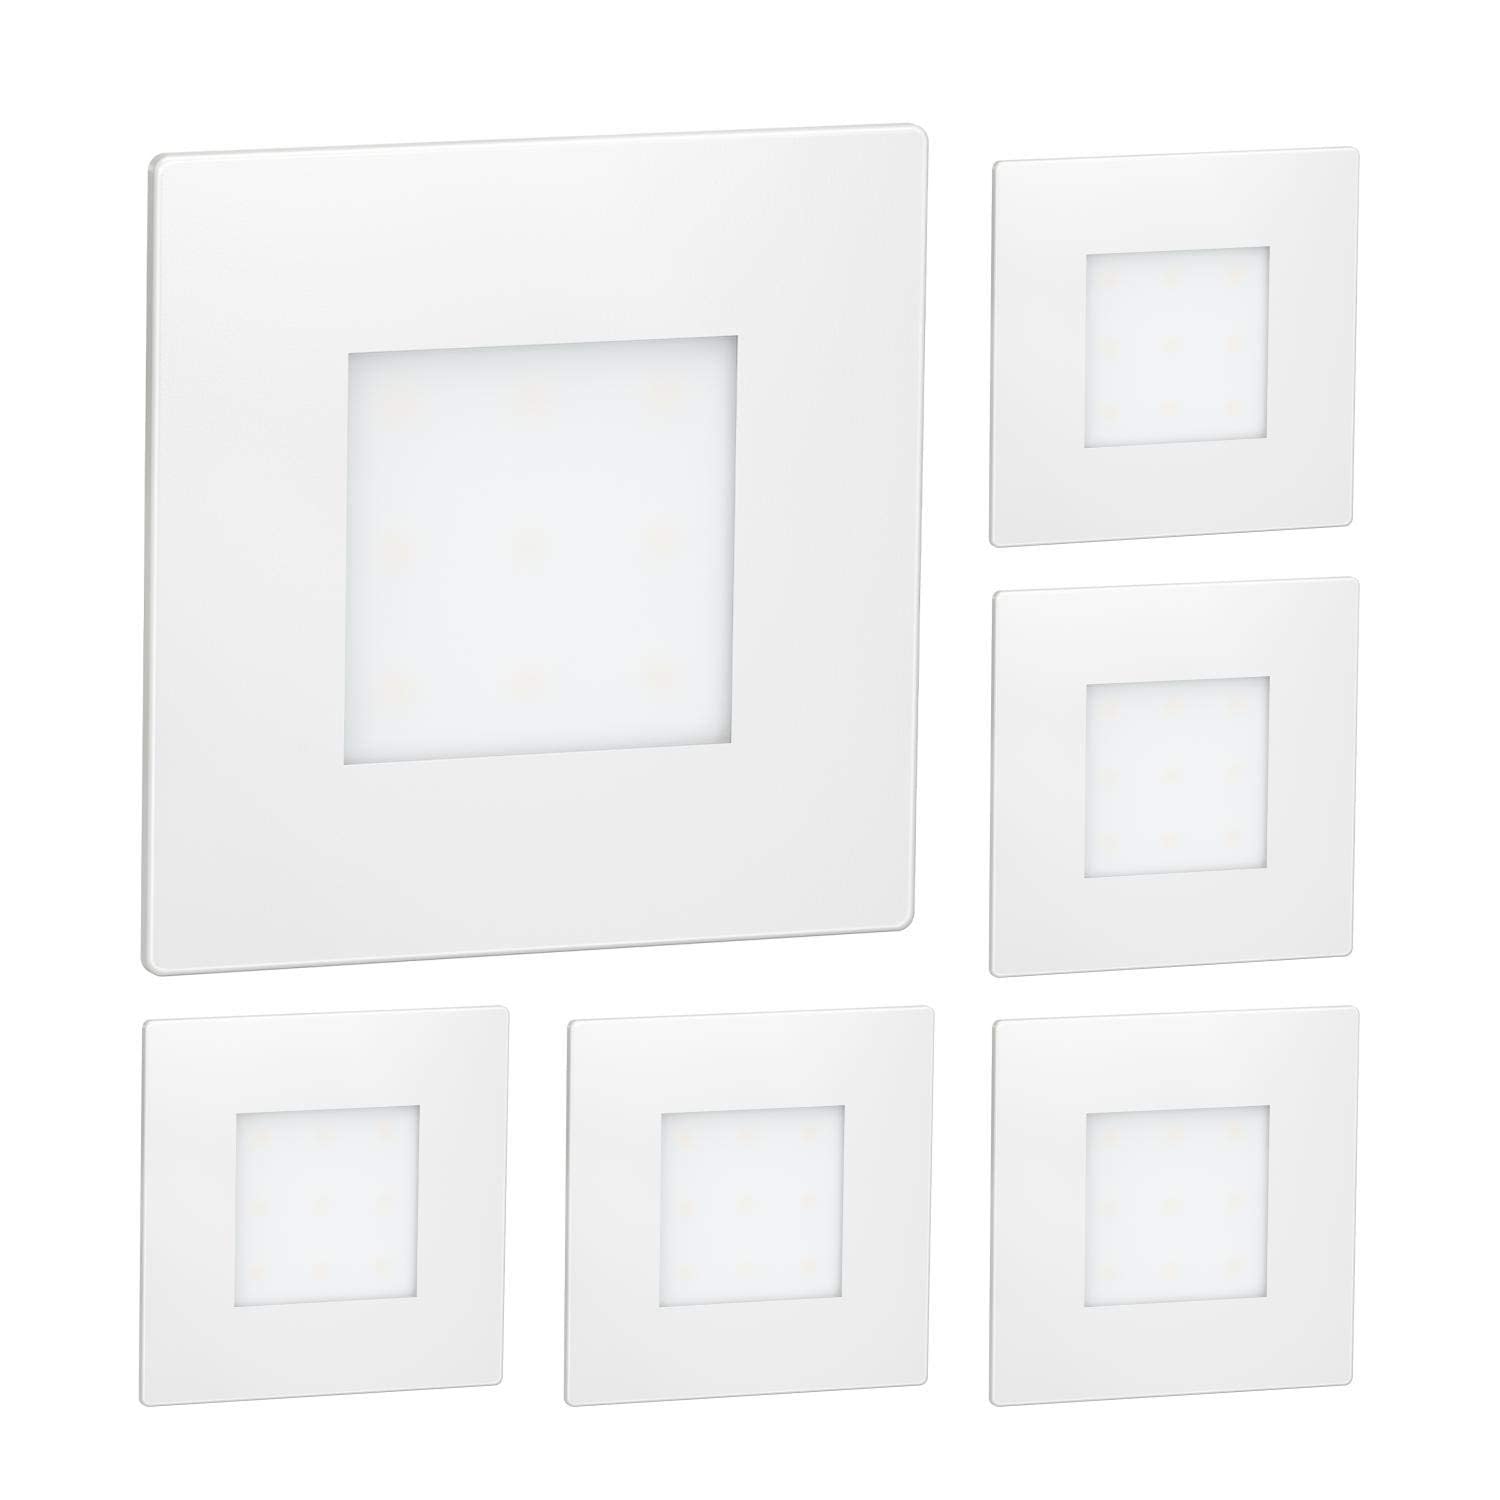 ledscom.de 6 Stück LED Treppenlicht/Wandeinbauleuchte FEX für innen und außen, eckig, 85 x 85mm, warmweiß